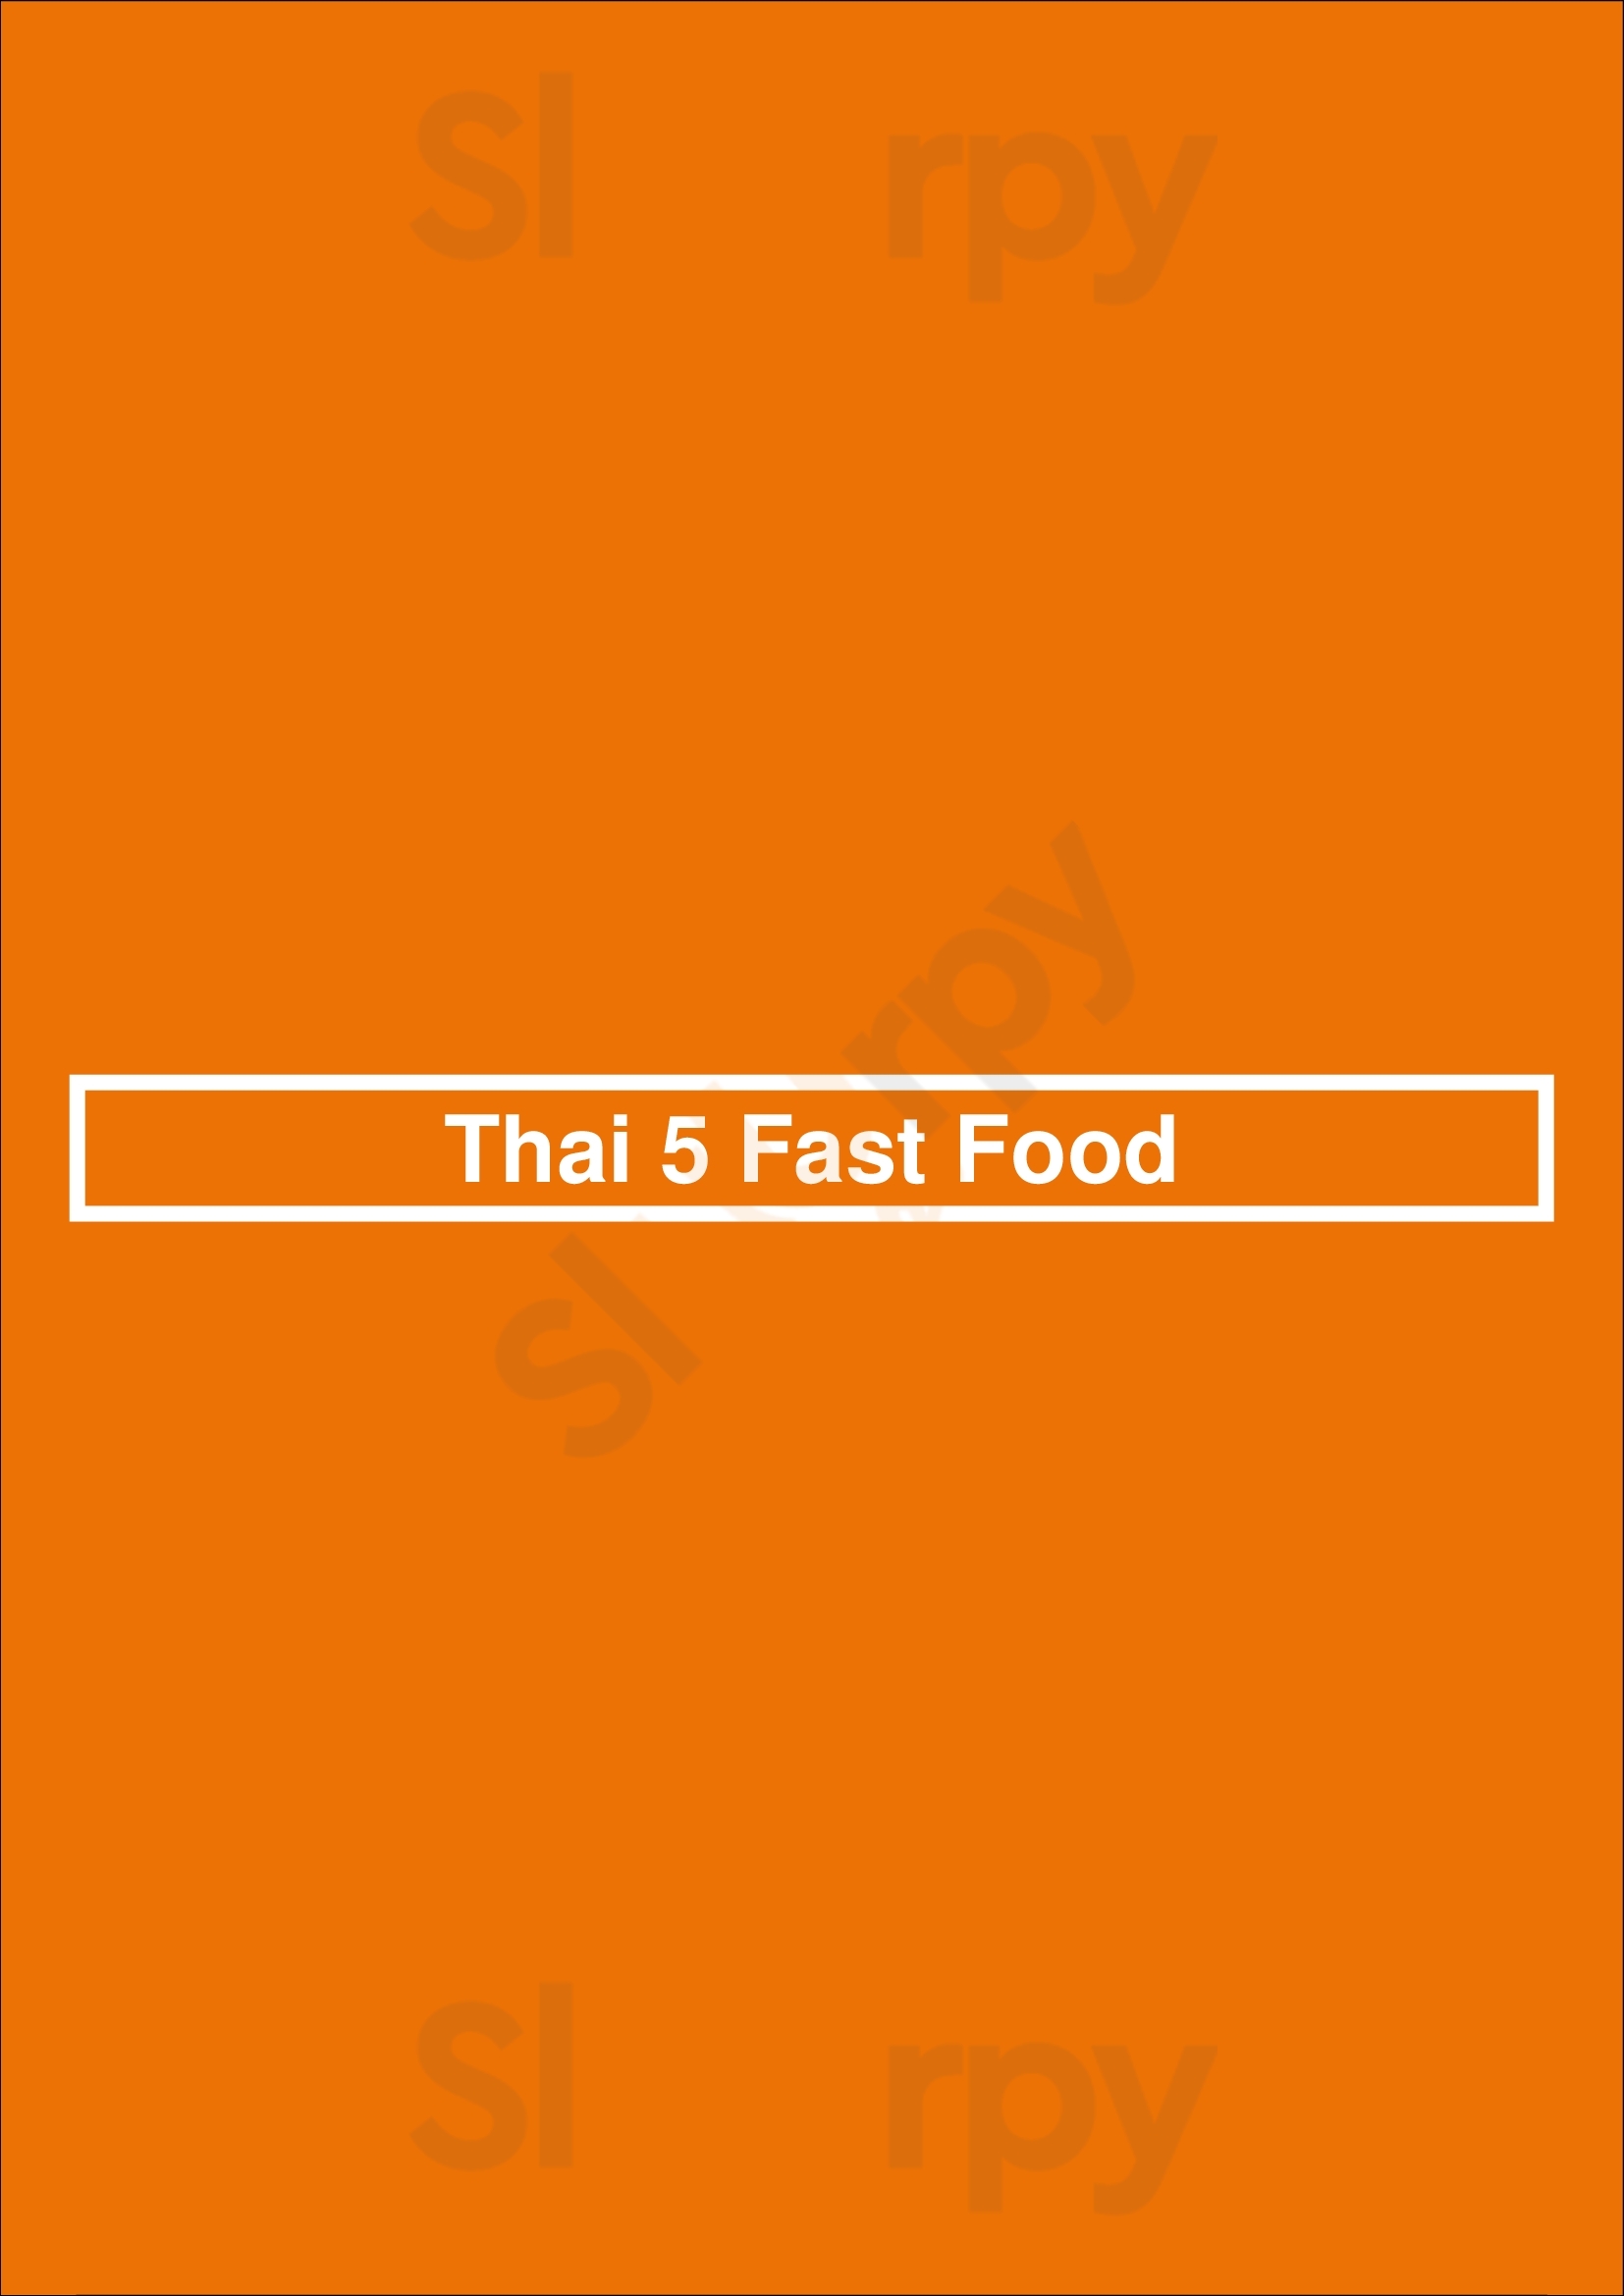 Thai 5 Fast Food (tampa) Tampa Menu - 1